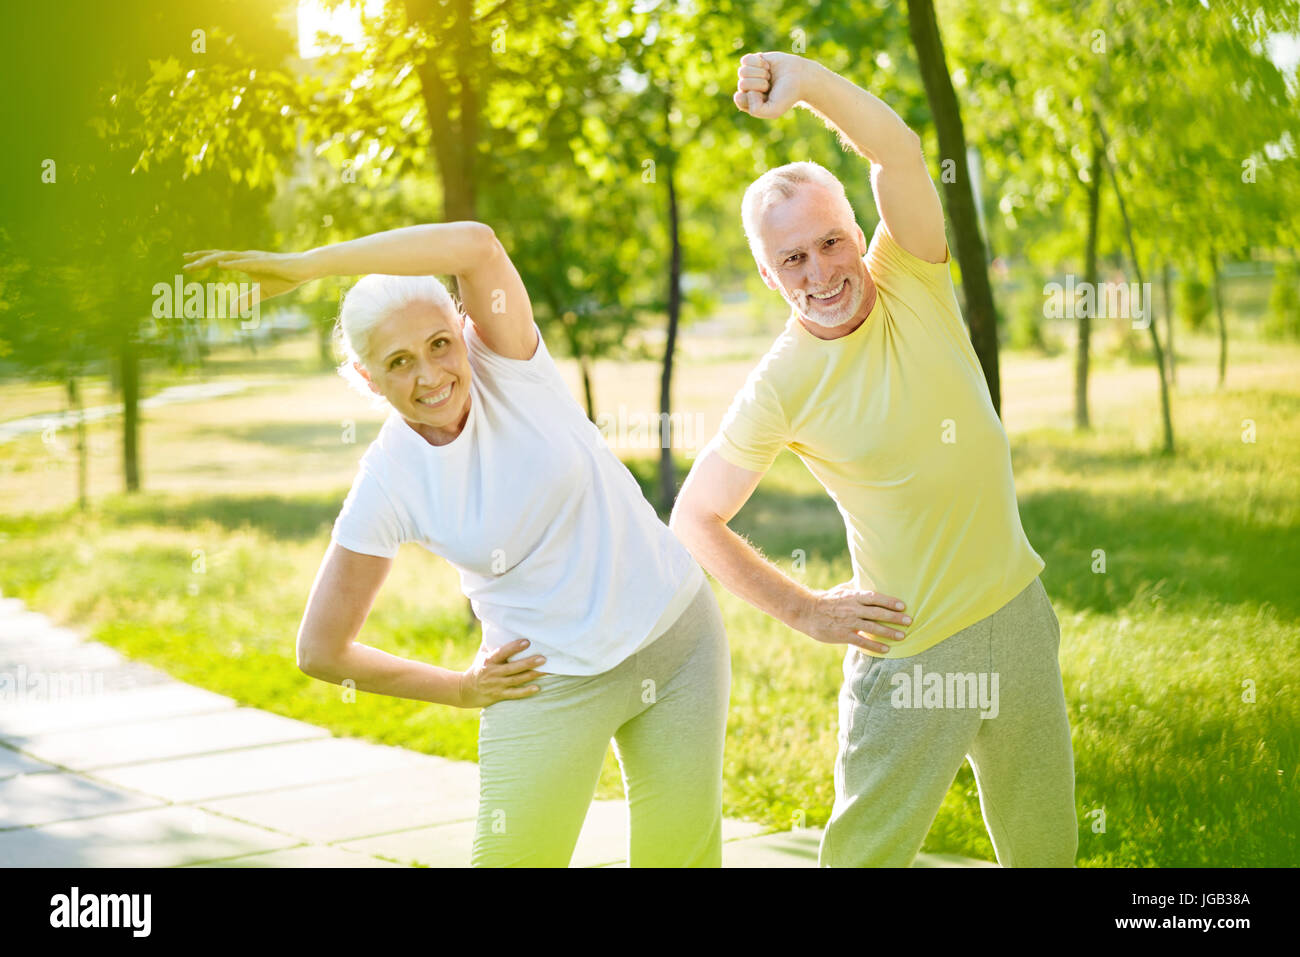 Alegre, sonriente anciano pareja realizando ejercicios deportivos Foto de stock